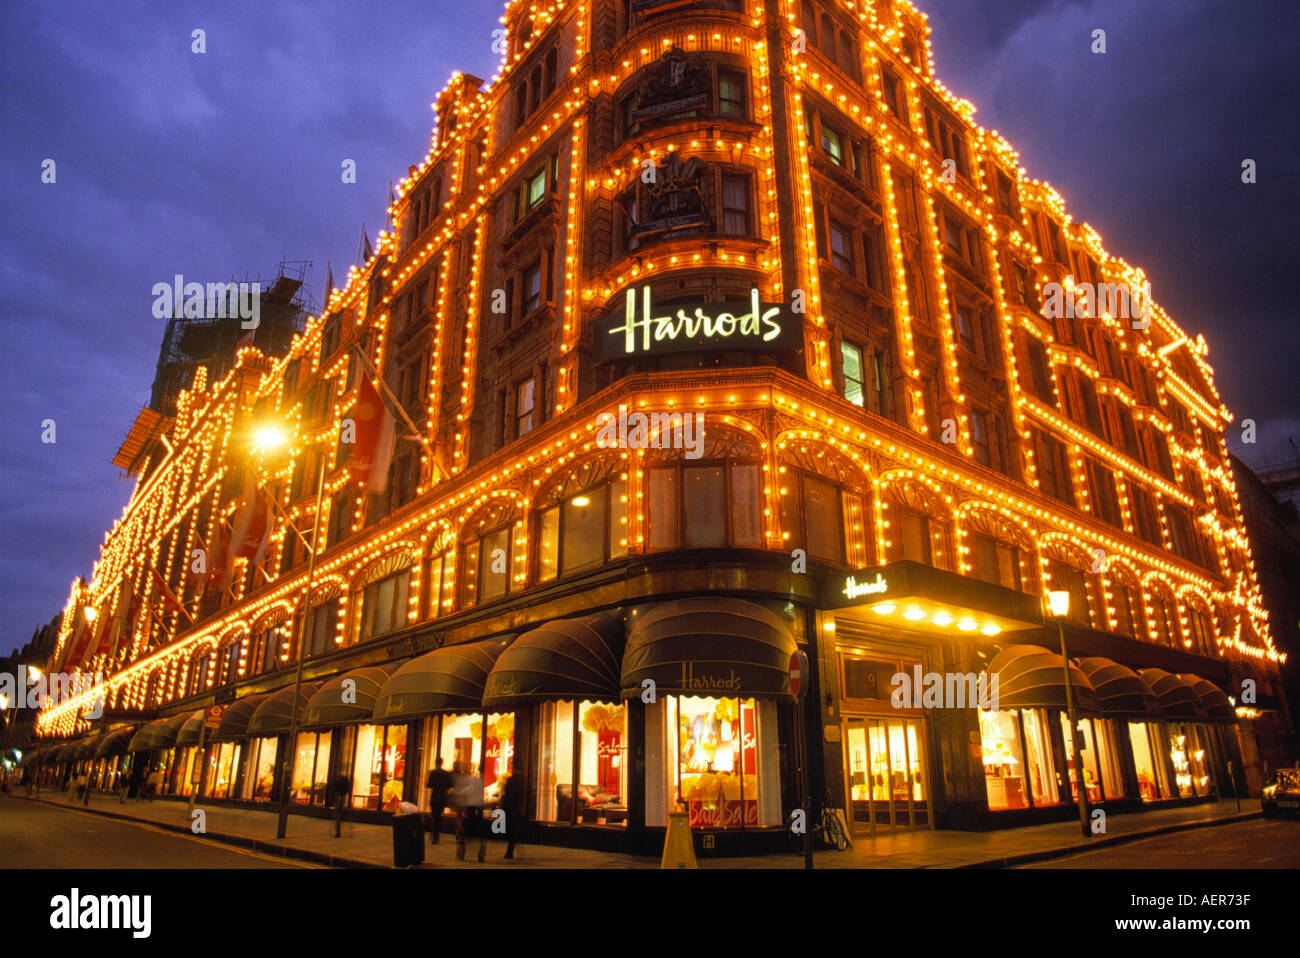 Harrods Kaufhaus am Weihnachten Stadt London England Großbritannien  redaktionellen Gebrauch Stockfotografie - Alamy